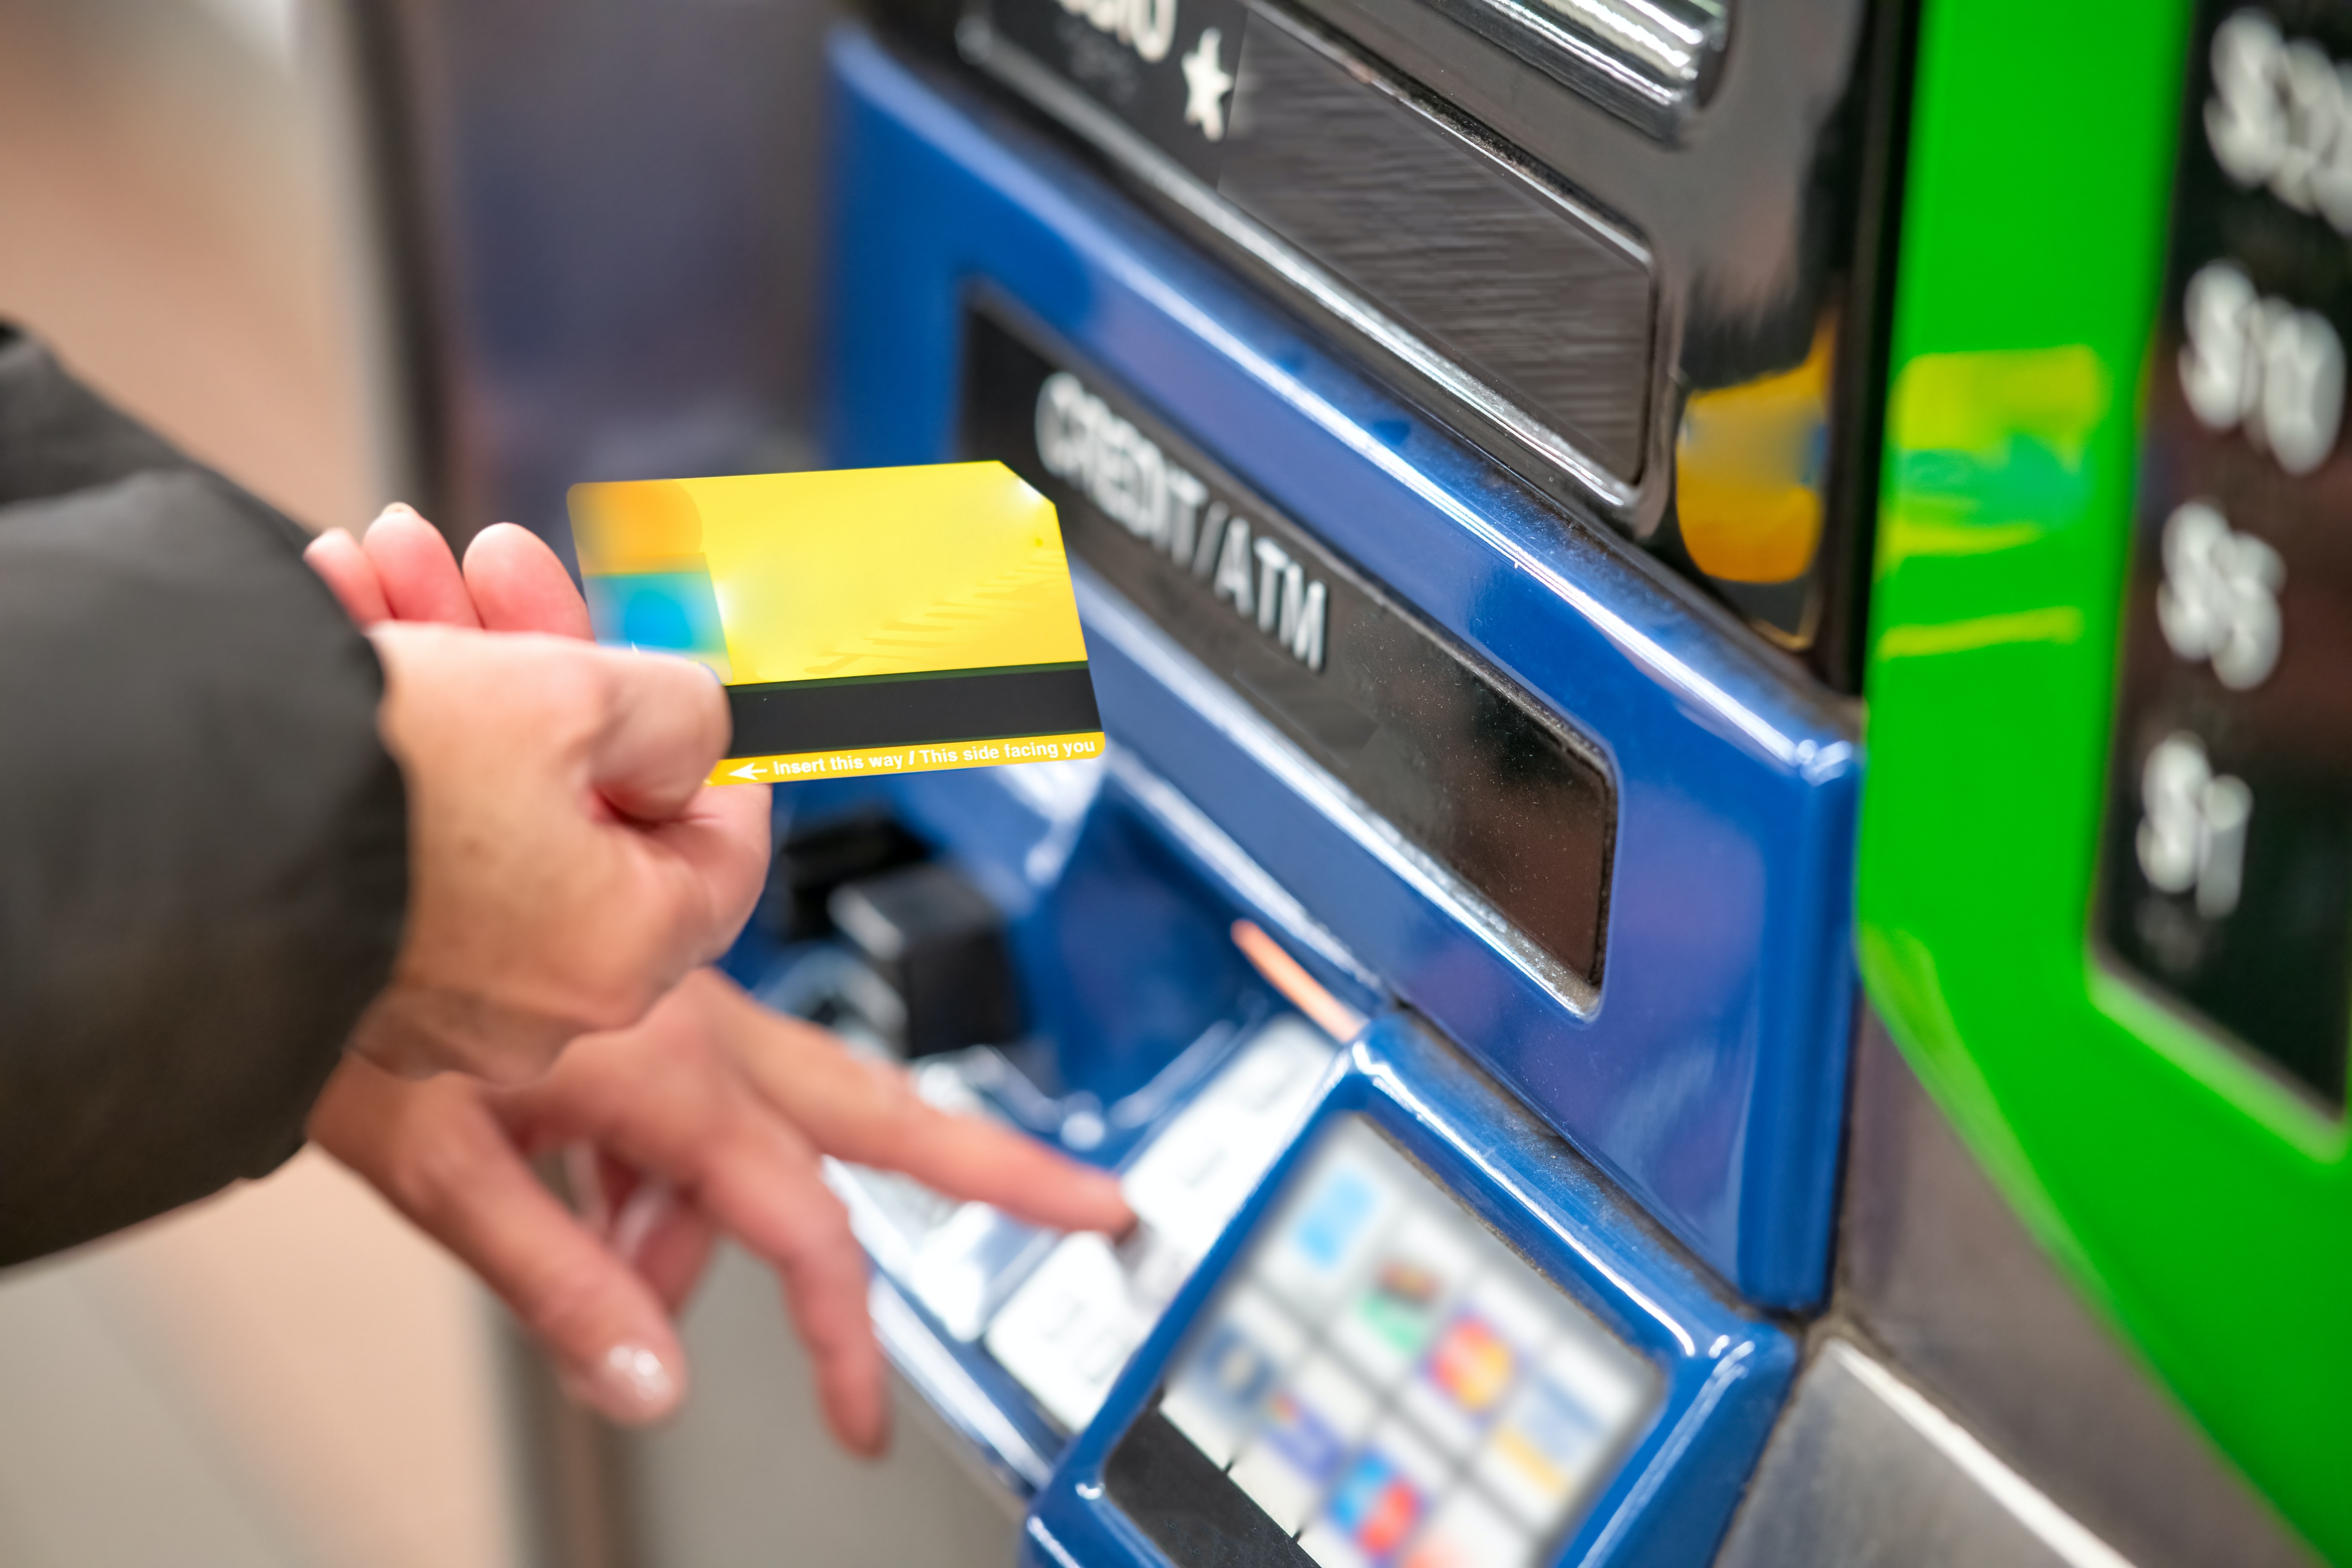 5 Cara Mengeluarkan Kartu ATM yang Tertelan dengan Mudah, Jangan Panik